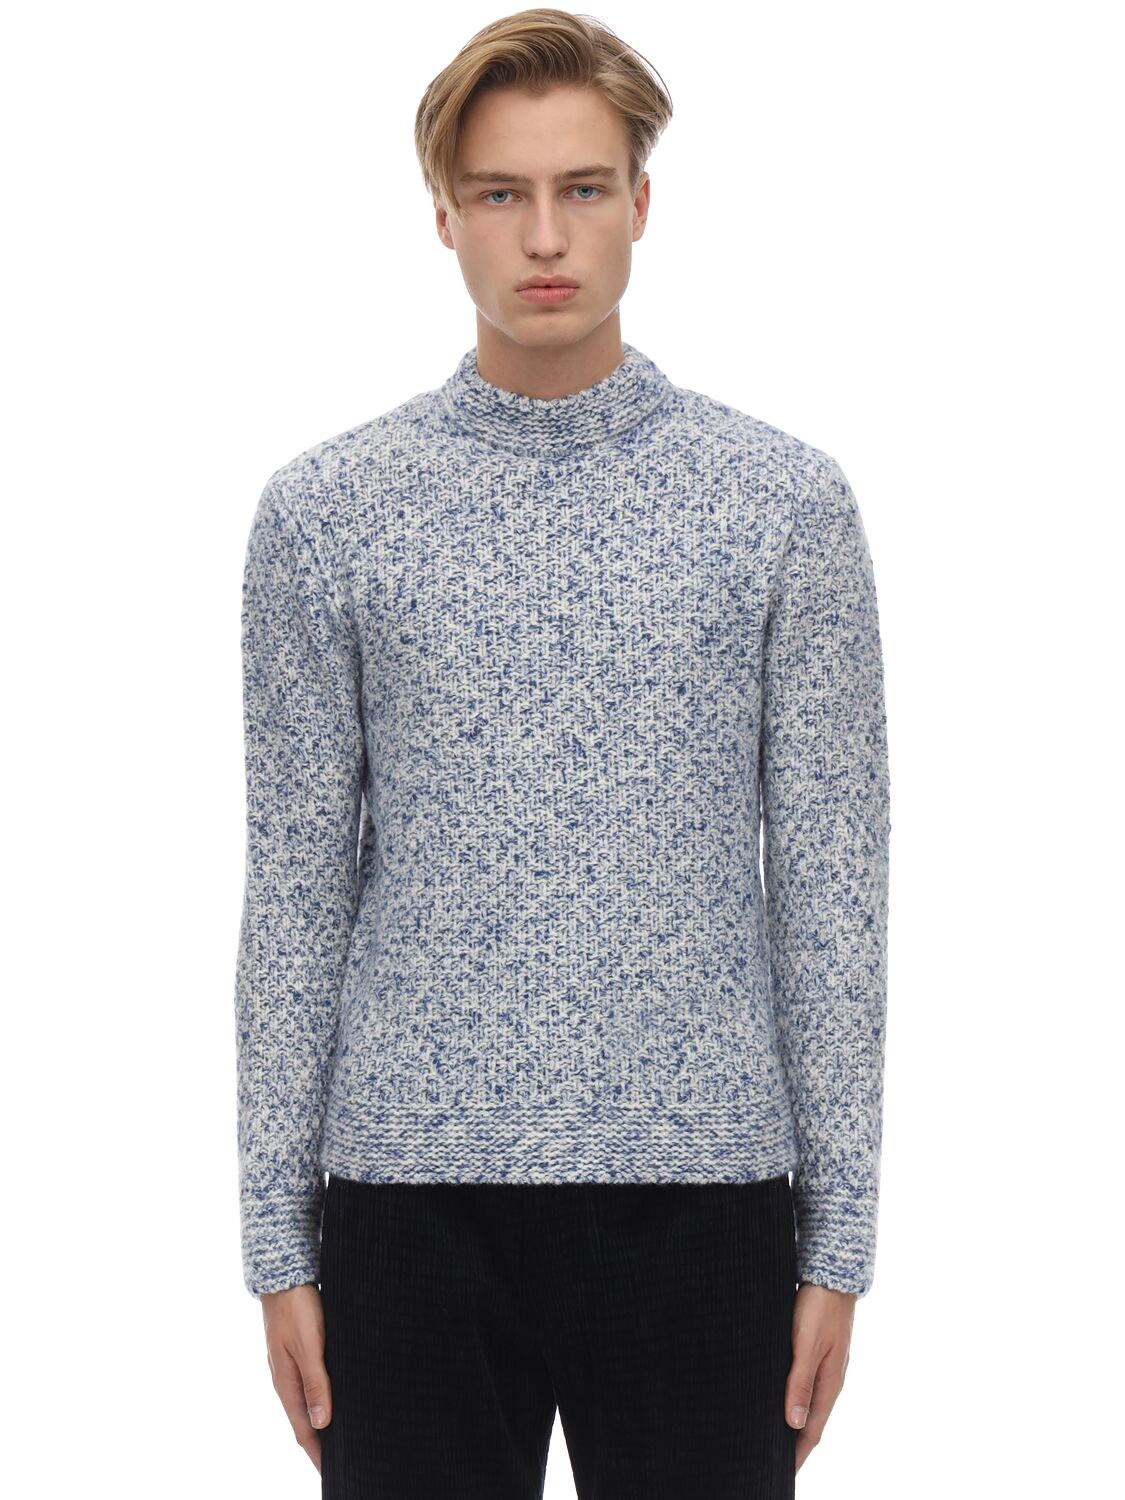 Giorgio Armani Moss Stitch Cashmere Blend Sweater In Light Blue